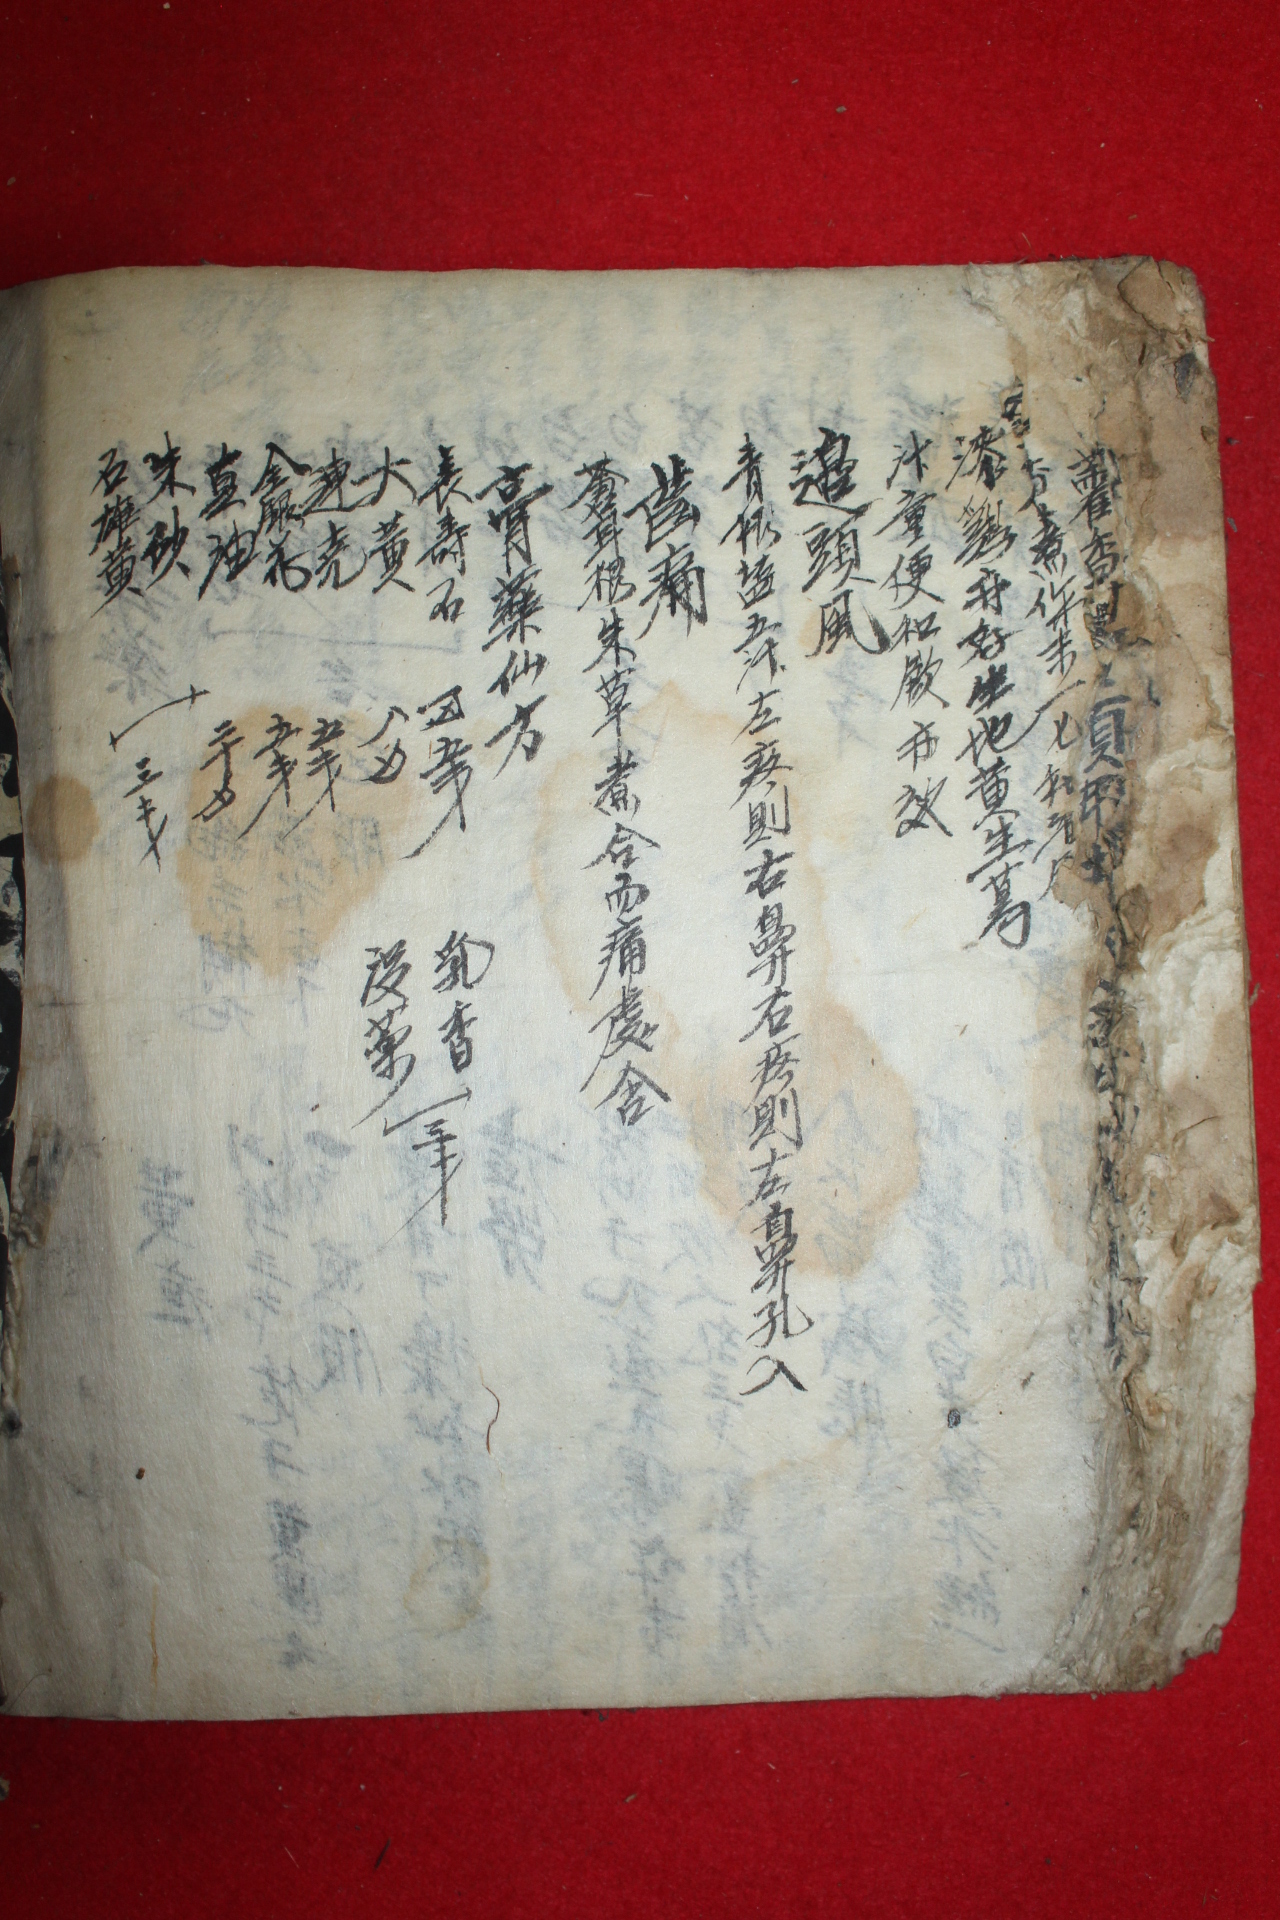 조선시대 필사본 약성가(藥性歌)